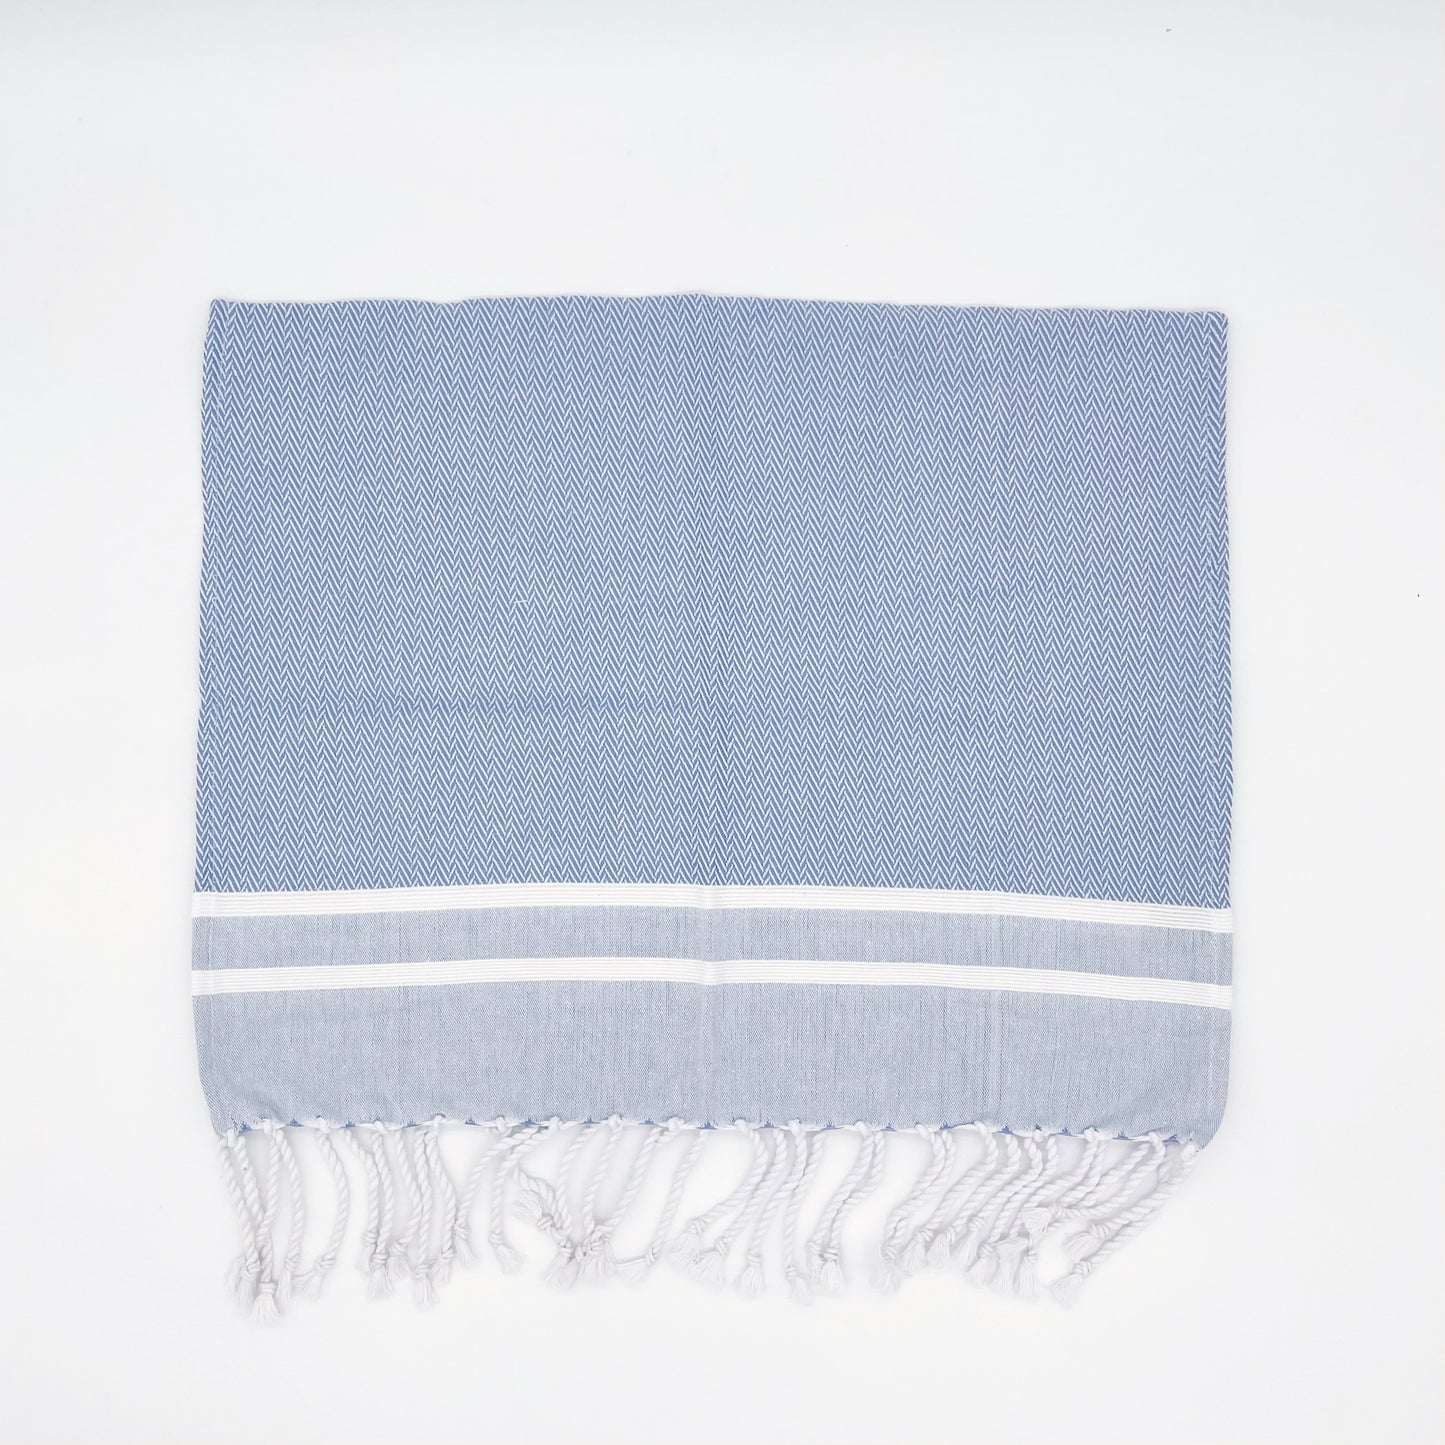 Guest Towel - Blue and White Herringbone